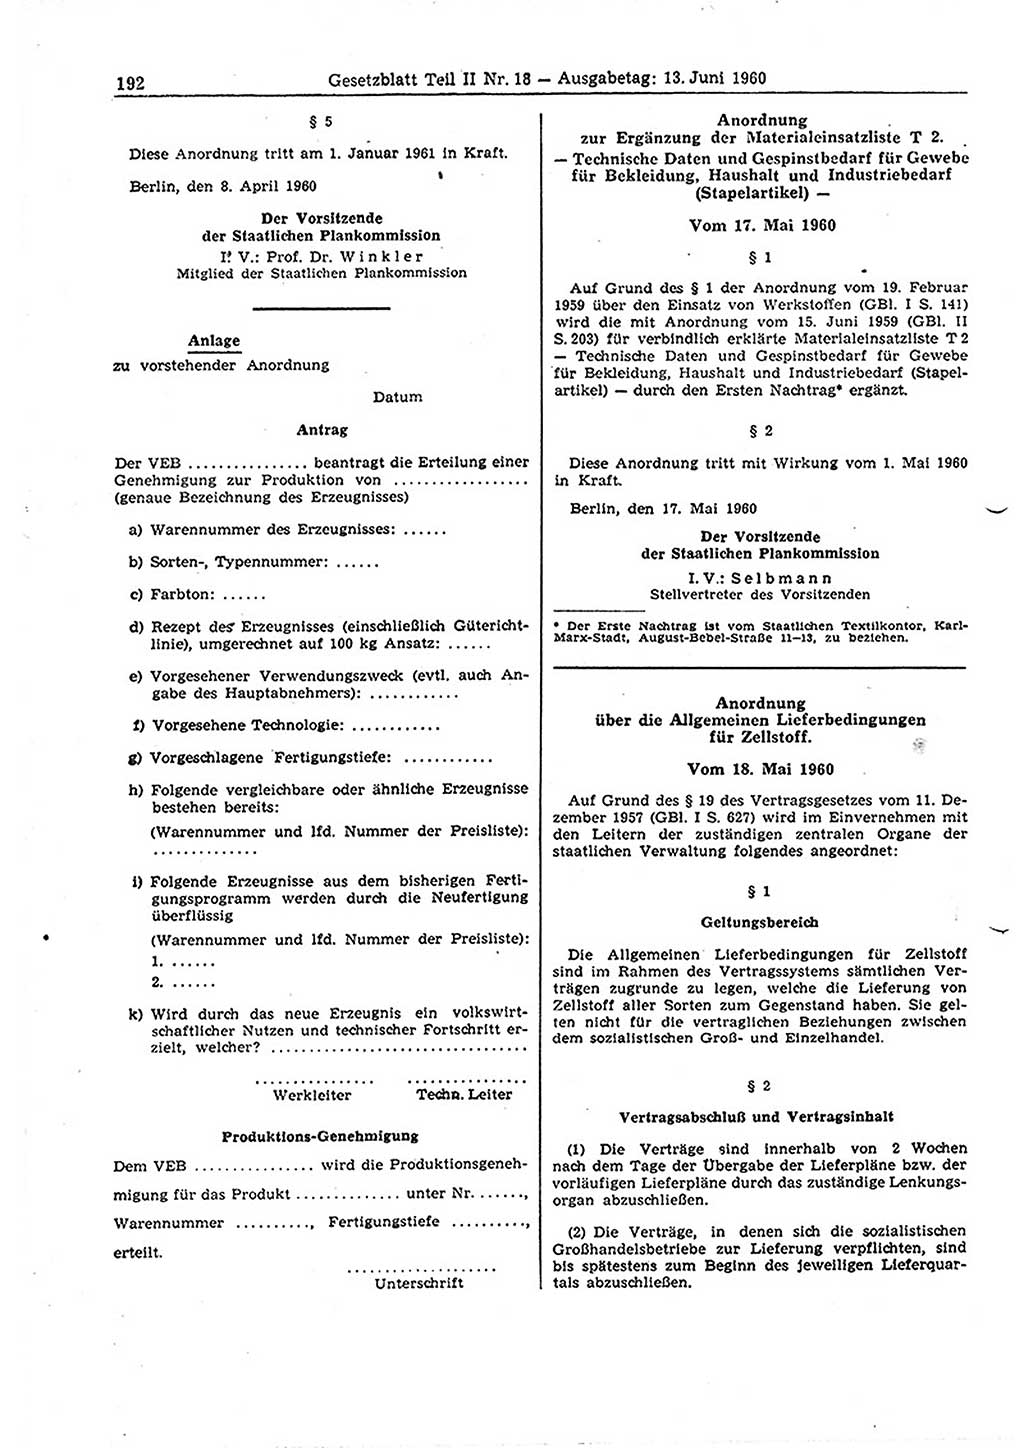 Gesetzblatt (GBl.) der Deutschen Demokratischen Republik (DDR) Teil ⅠⅠ 1960, Seite 192 (GBl. DDR ⅠⅠ 1960, S. 192)